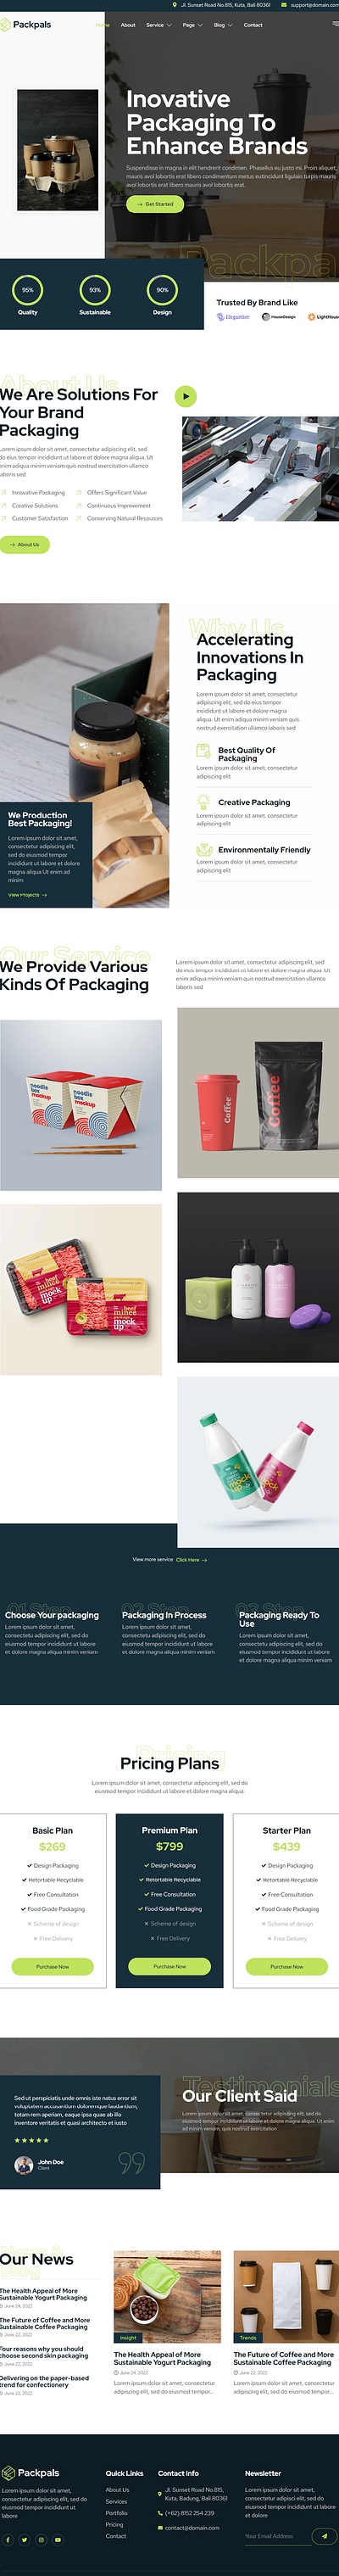 Packaging Company Website Concept branding design graphic design ui ux website wordpress